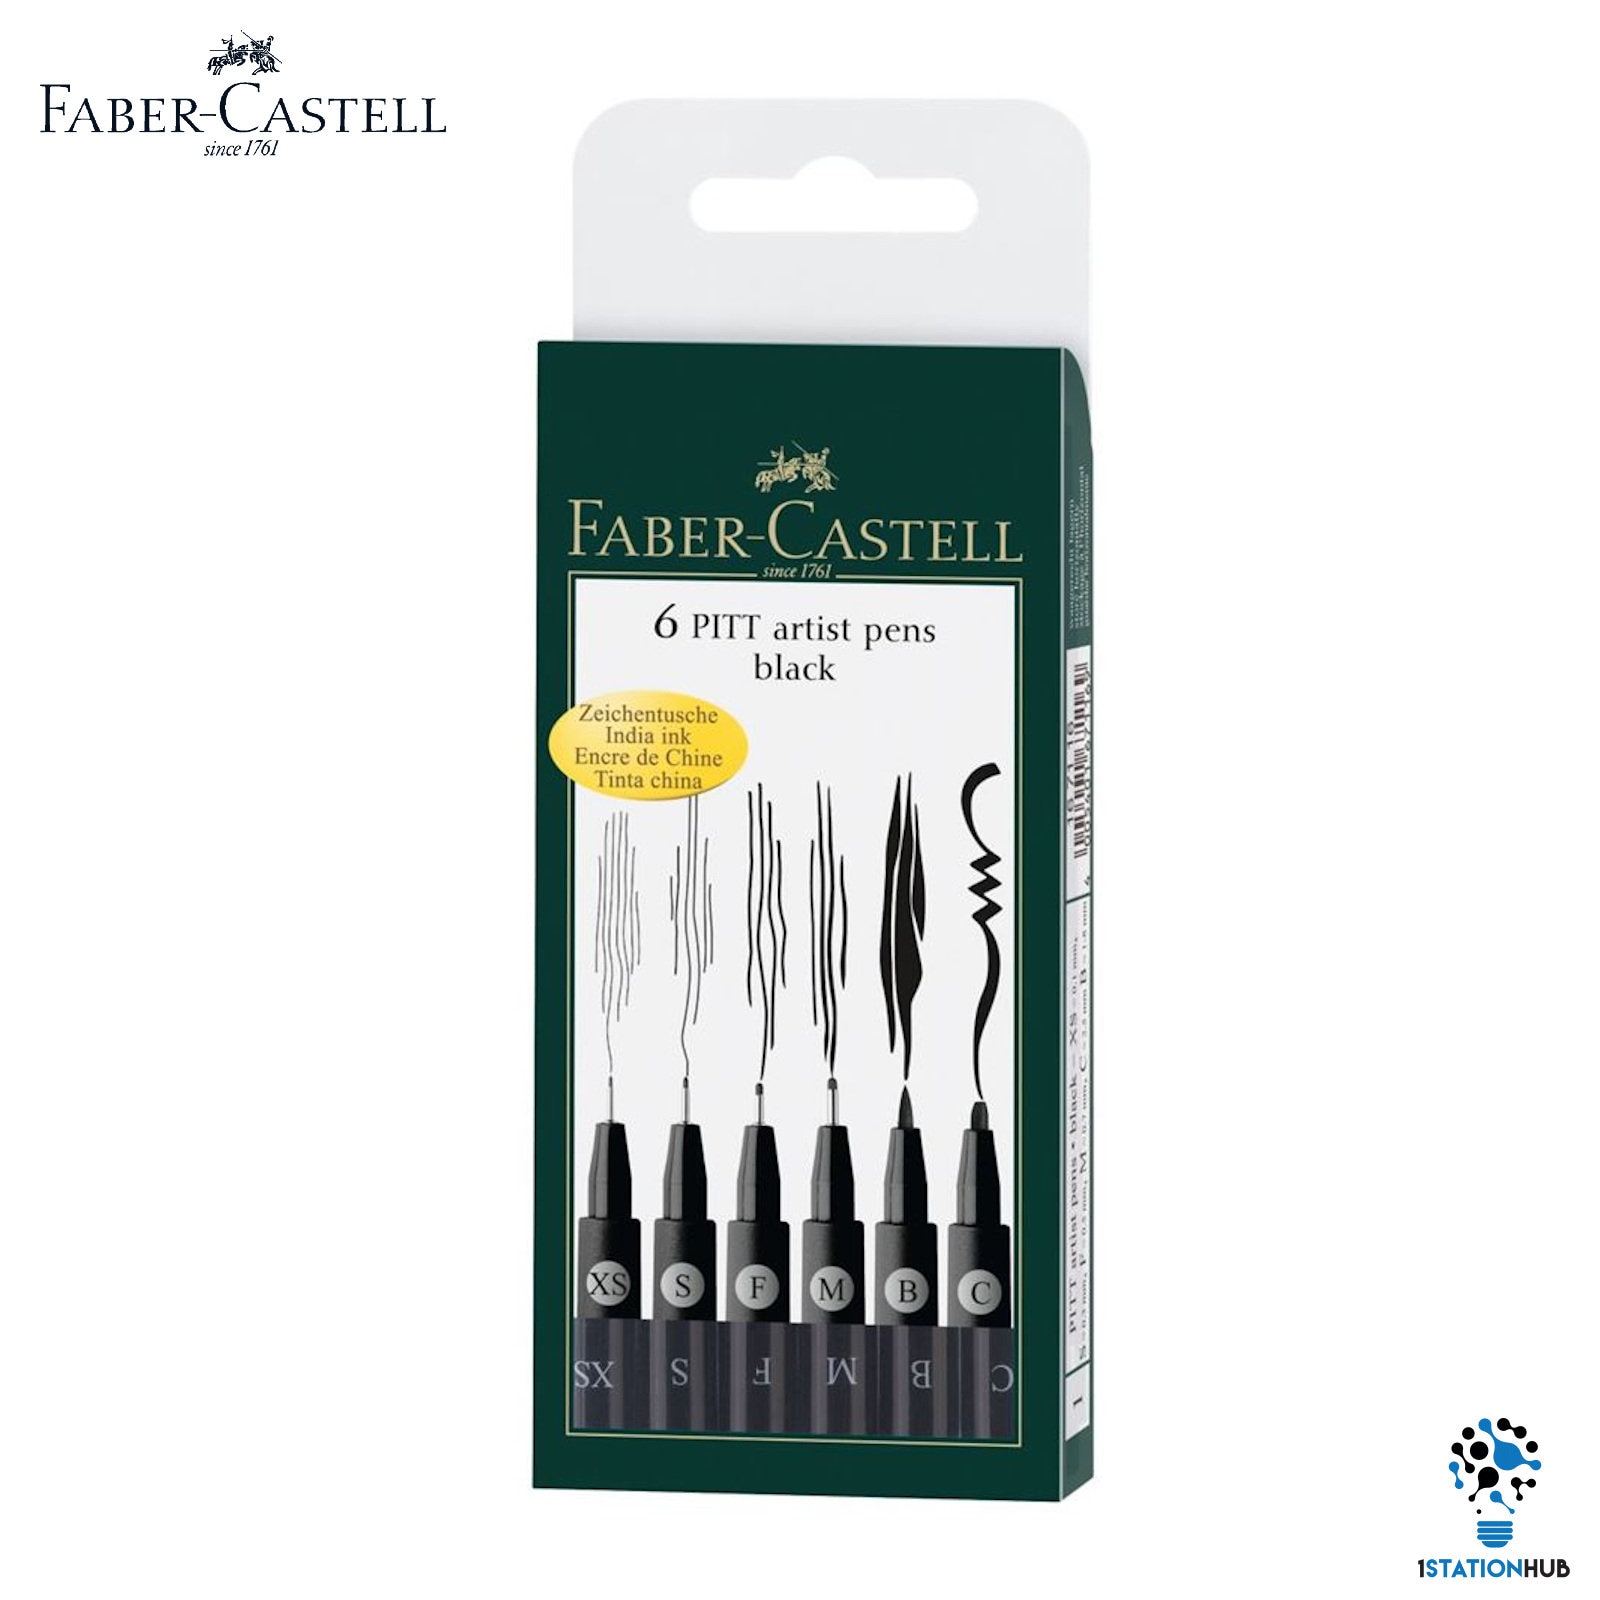 Faber Castell 6 Pitt Artist Pens Set Black Ink Art Hobby Pen -  Denmark